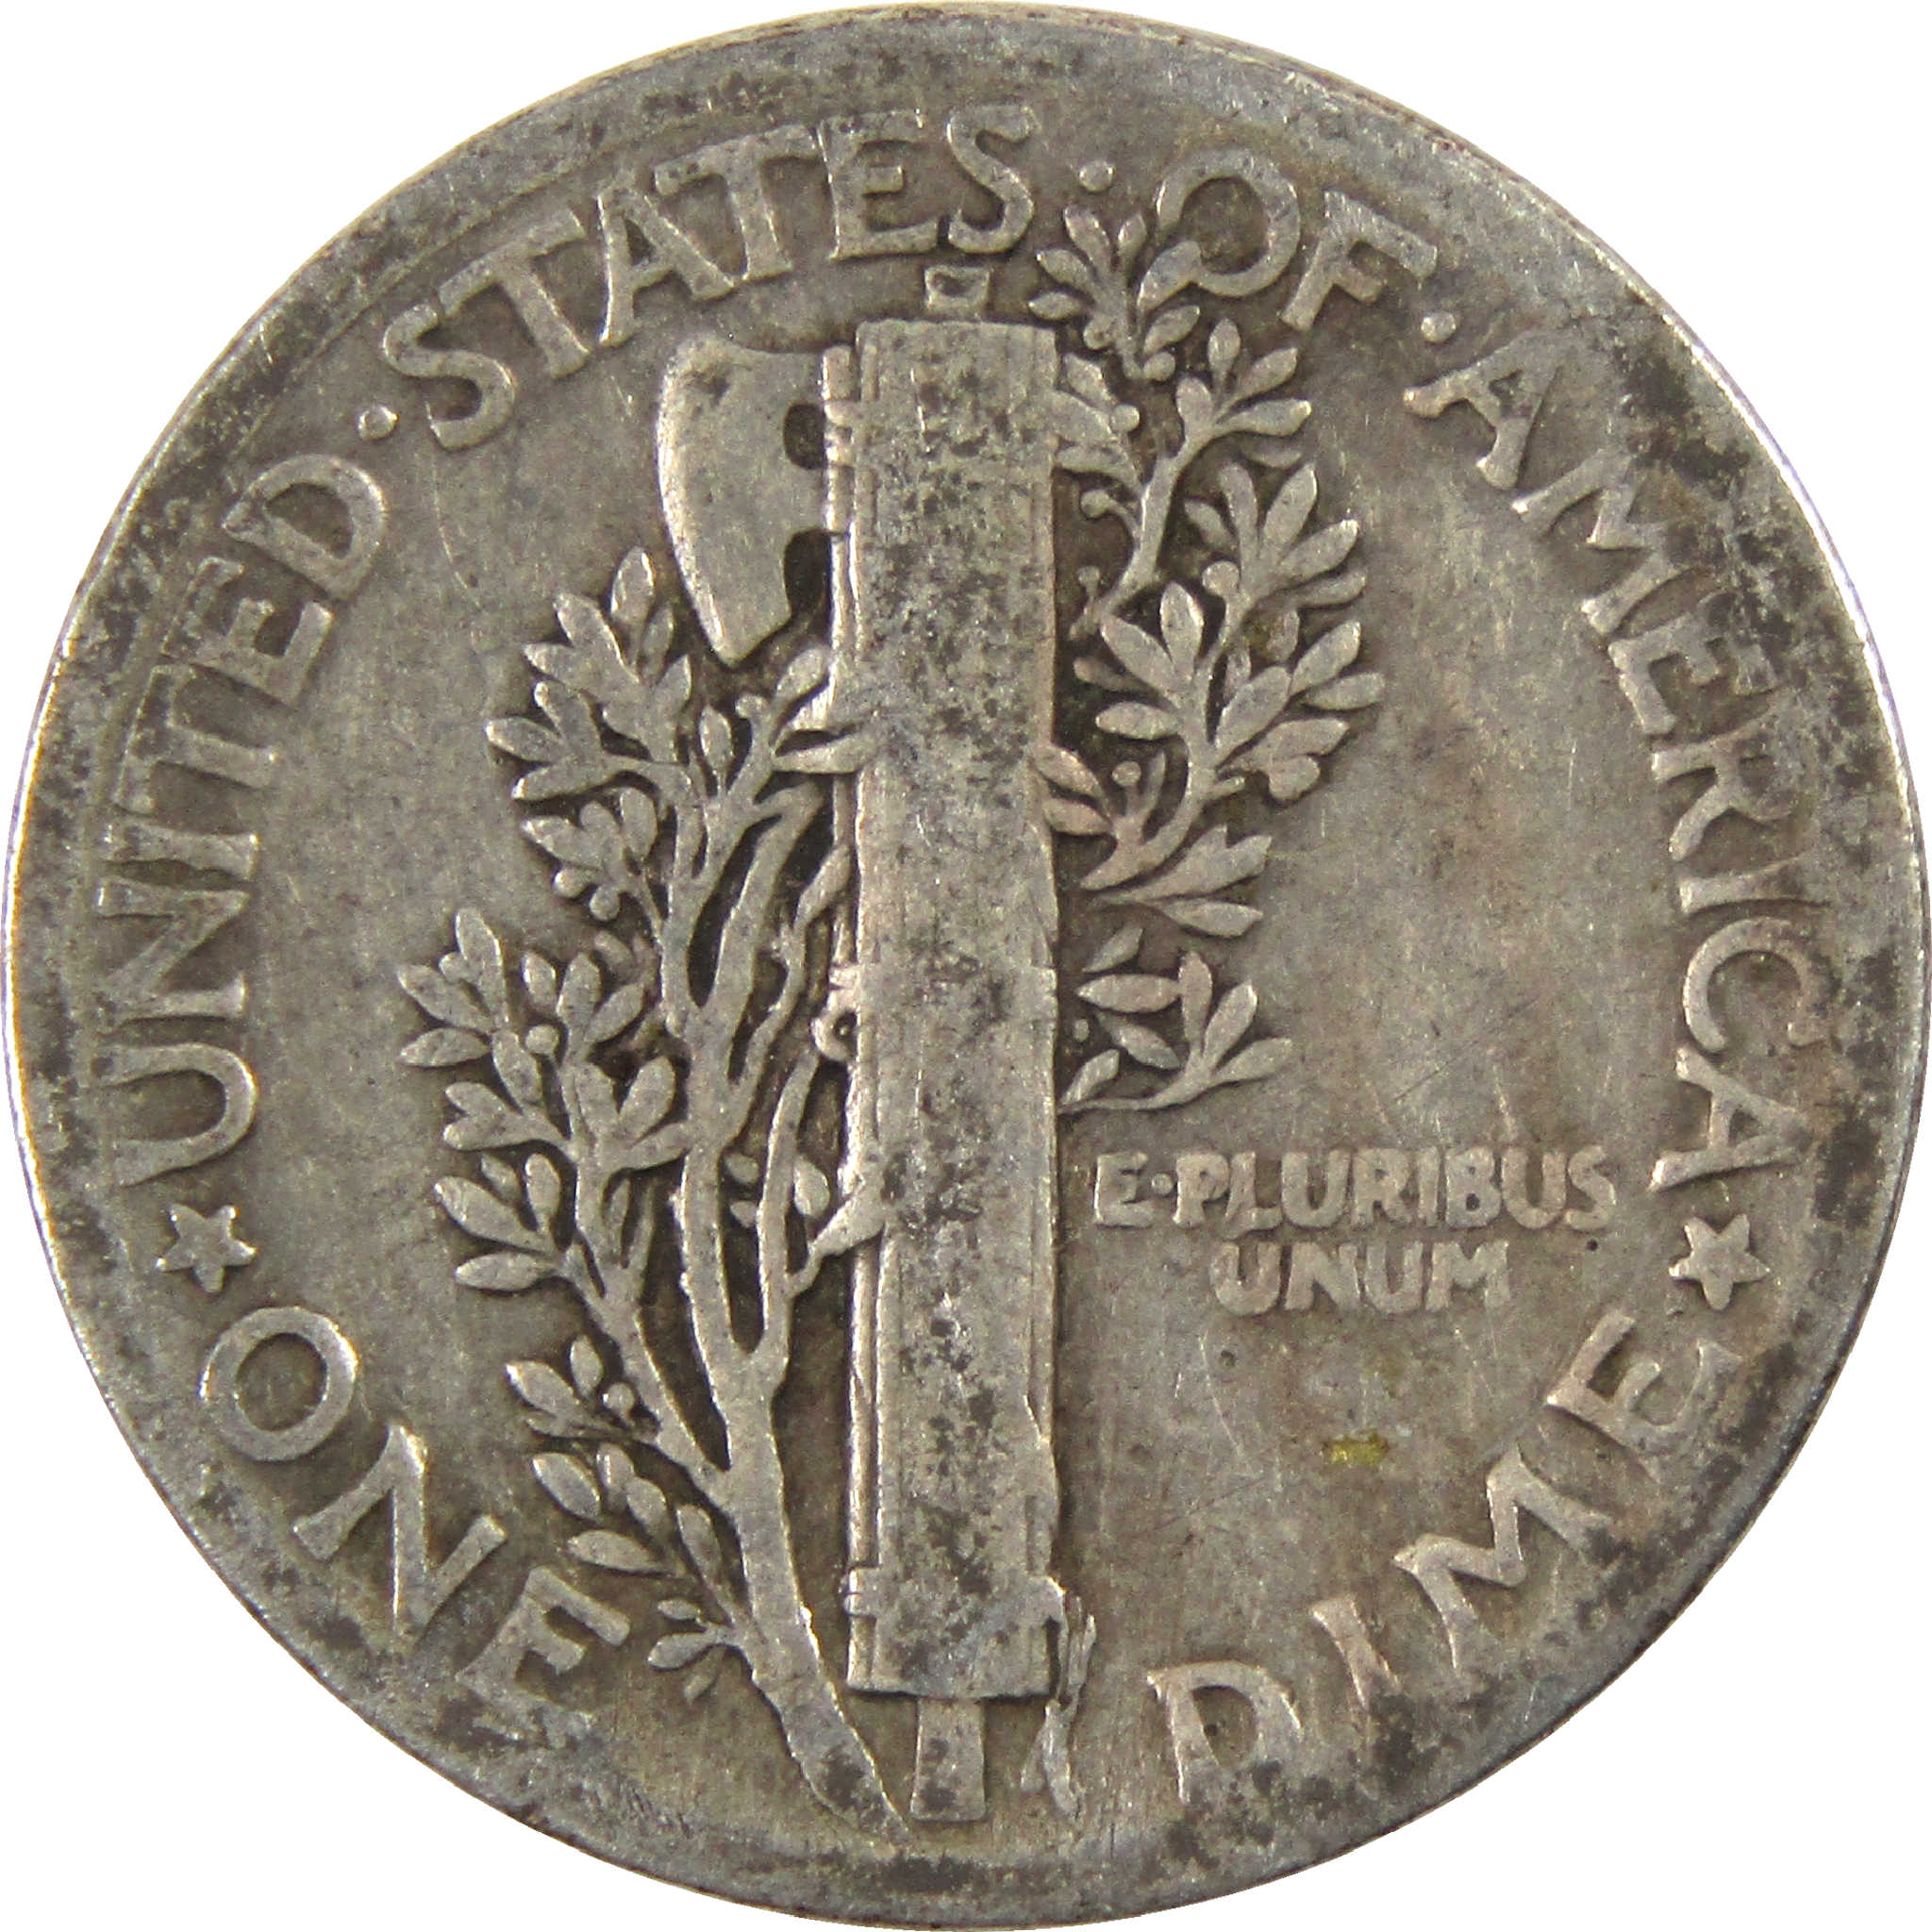 1927 Mercury Dime G Good Silver 10c Coin